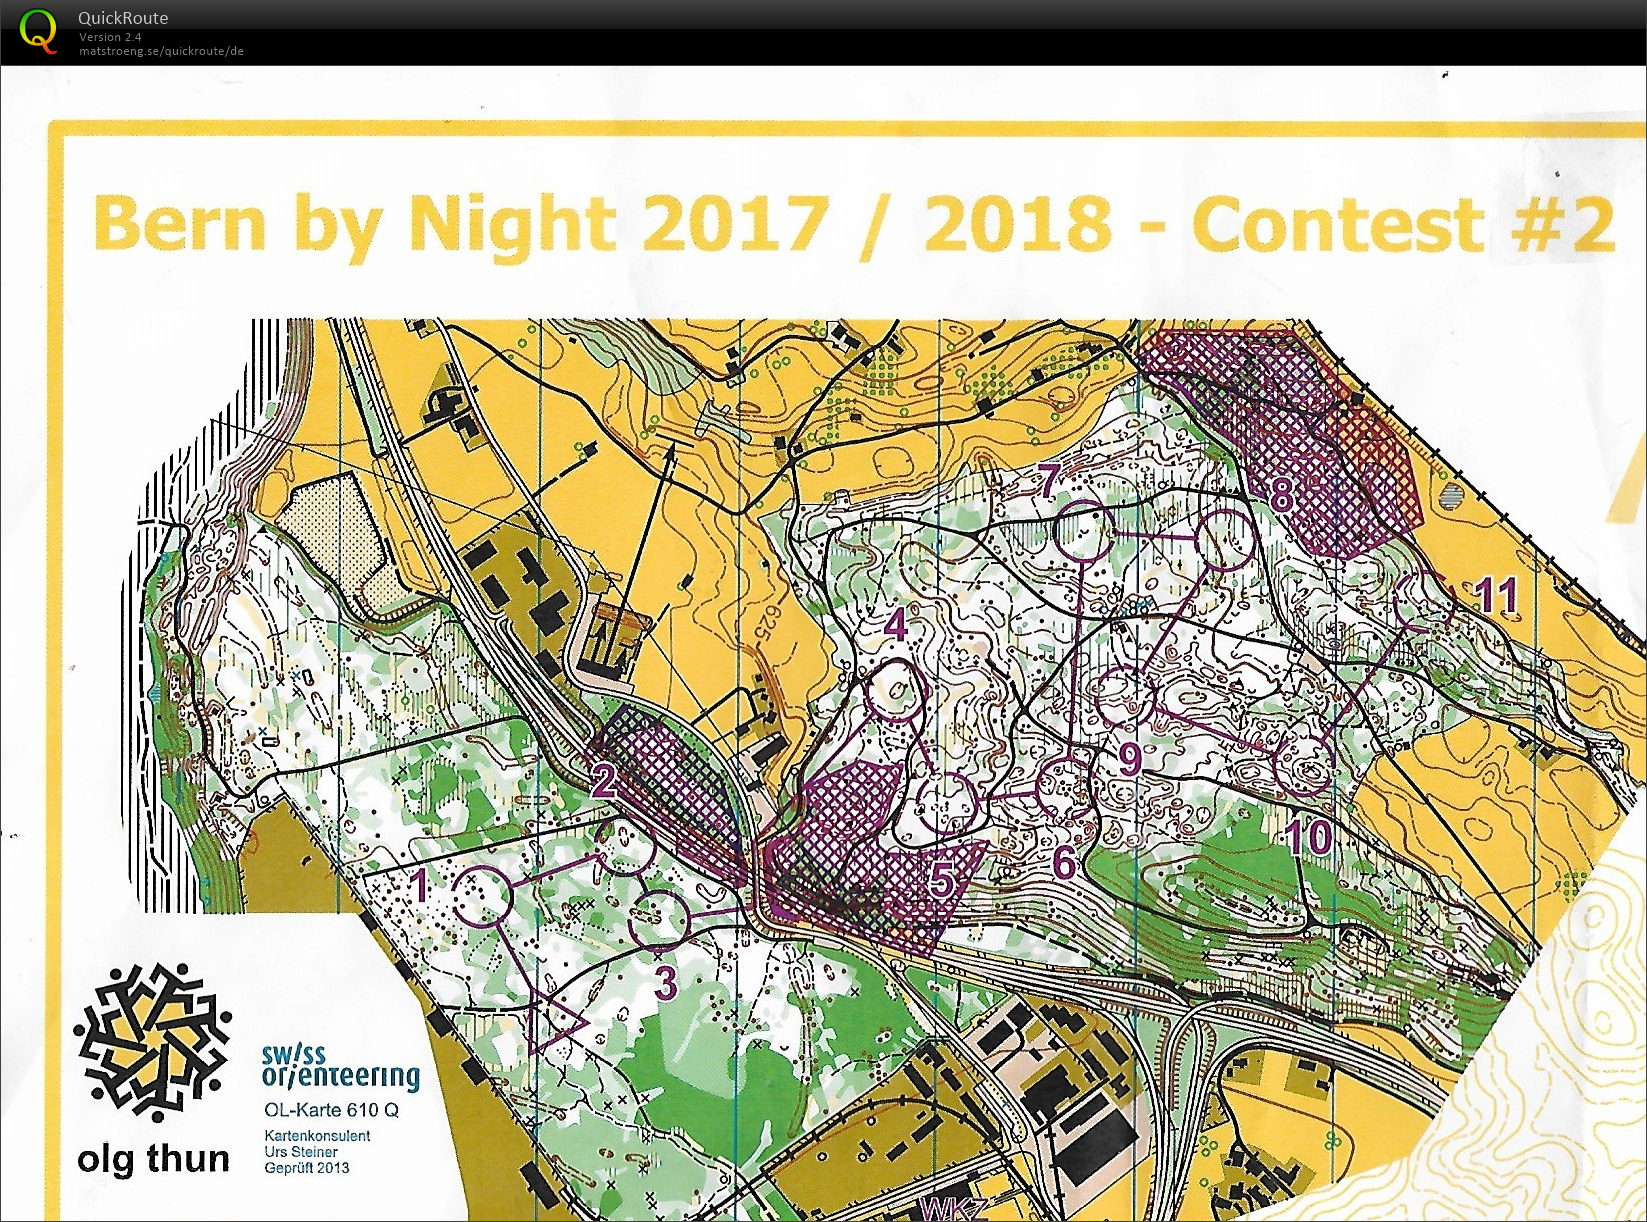 Bern by night #2 (08/12/2017)